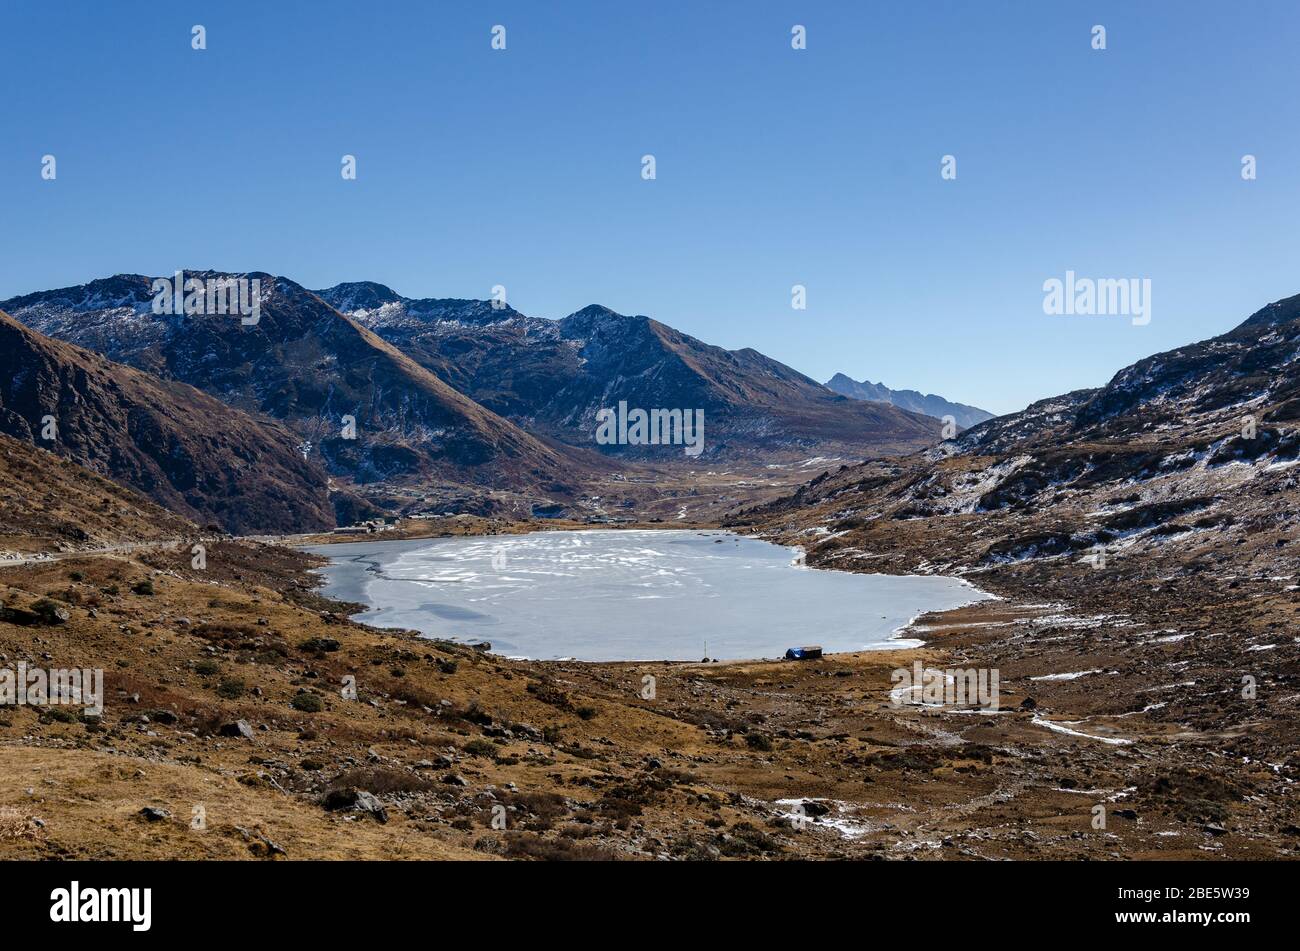 Vista del lago Manju al borde de la carretera en el Paso Nathu la, Sikkim, India Foto de stock